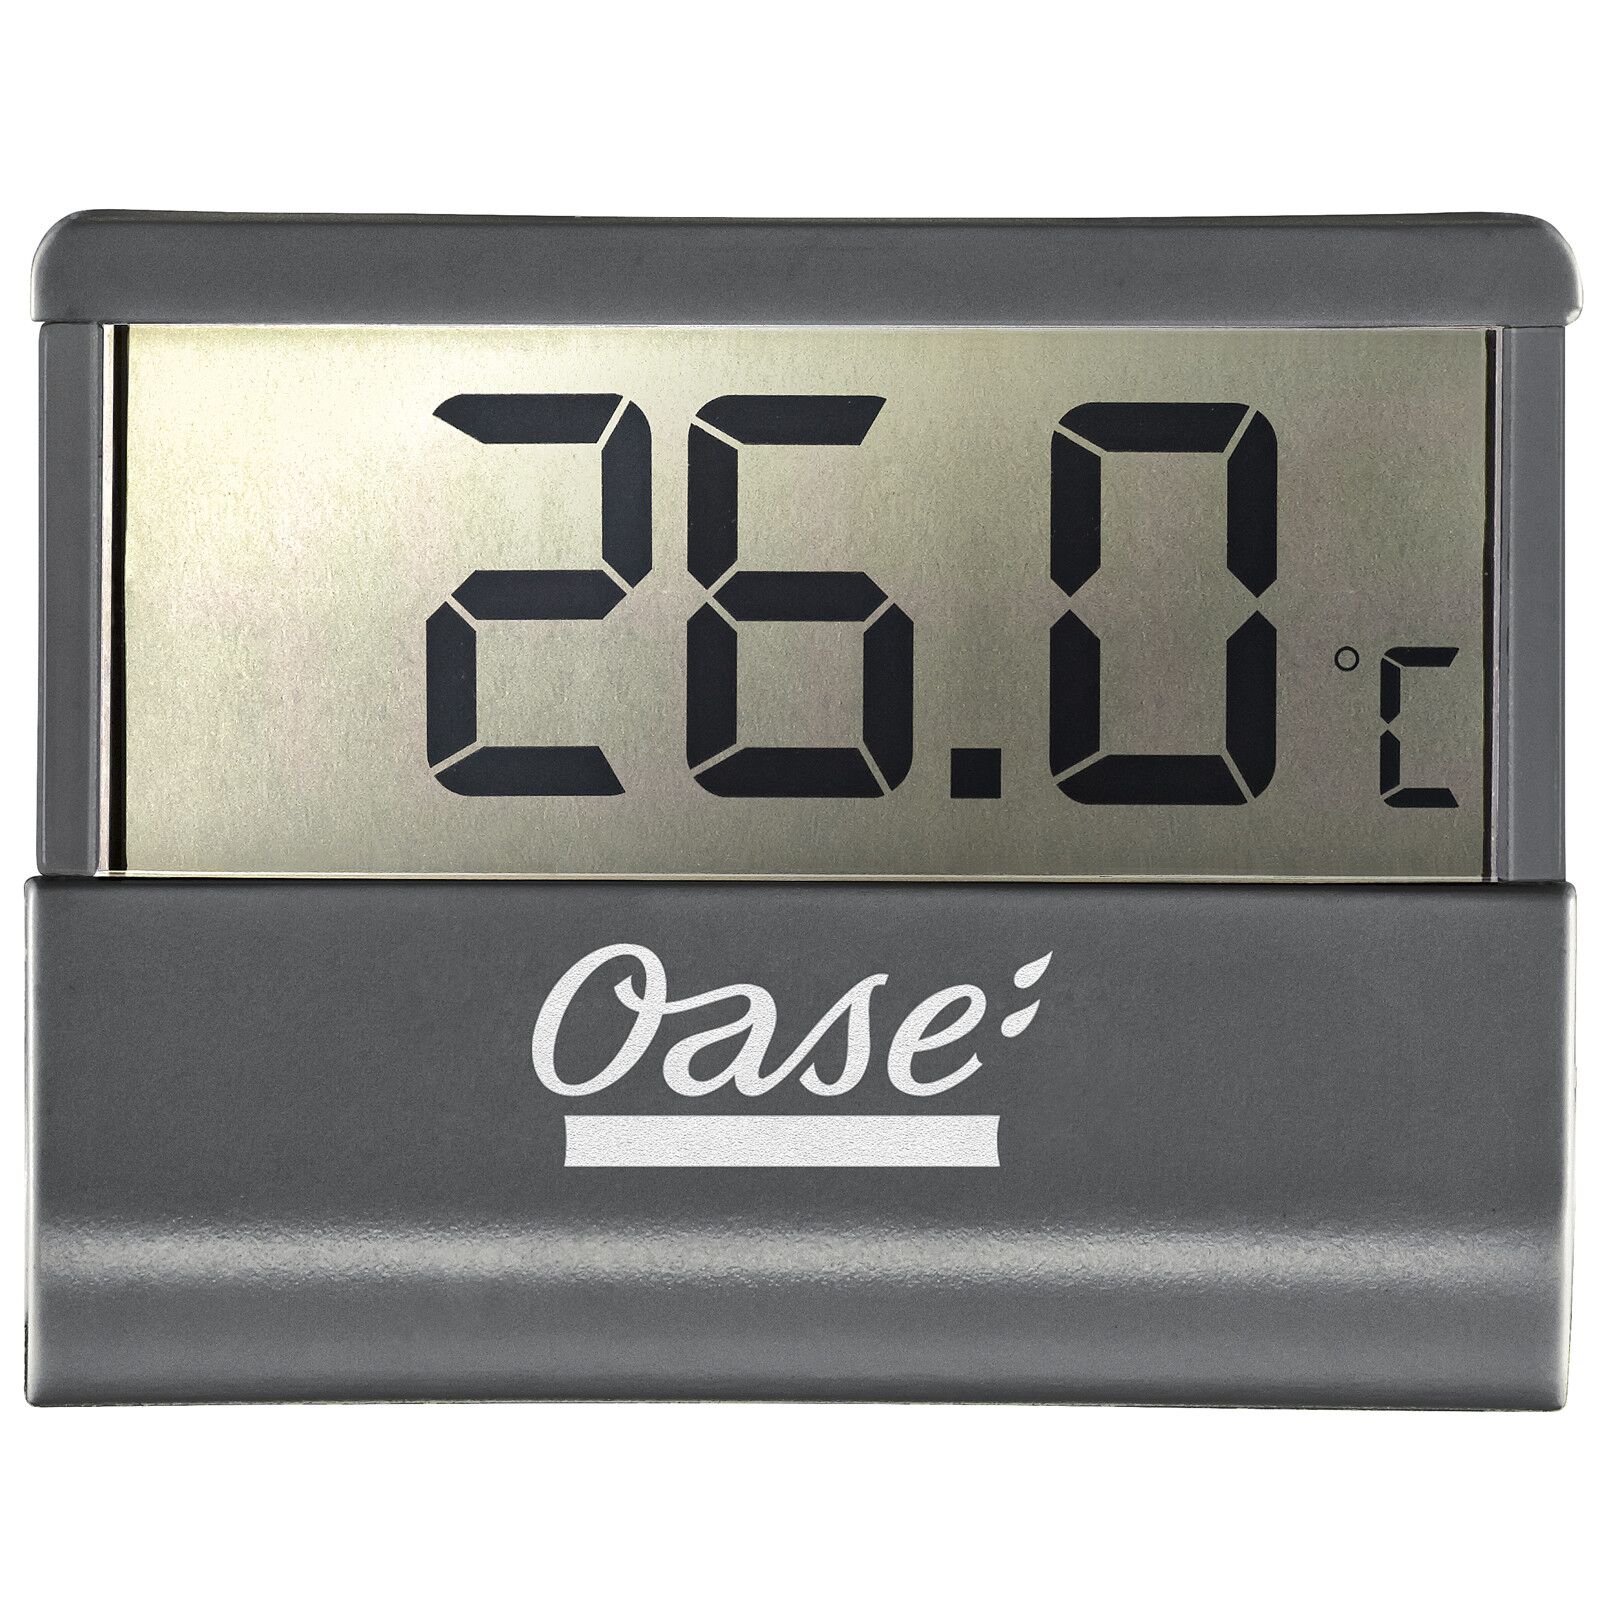 pianist moed helper Oase - Digital Thermometer | Aquasabi - Aquascaping Shop